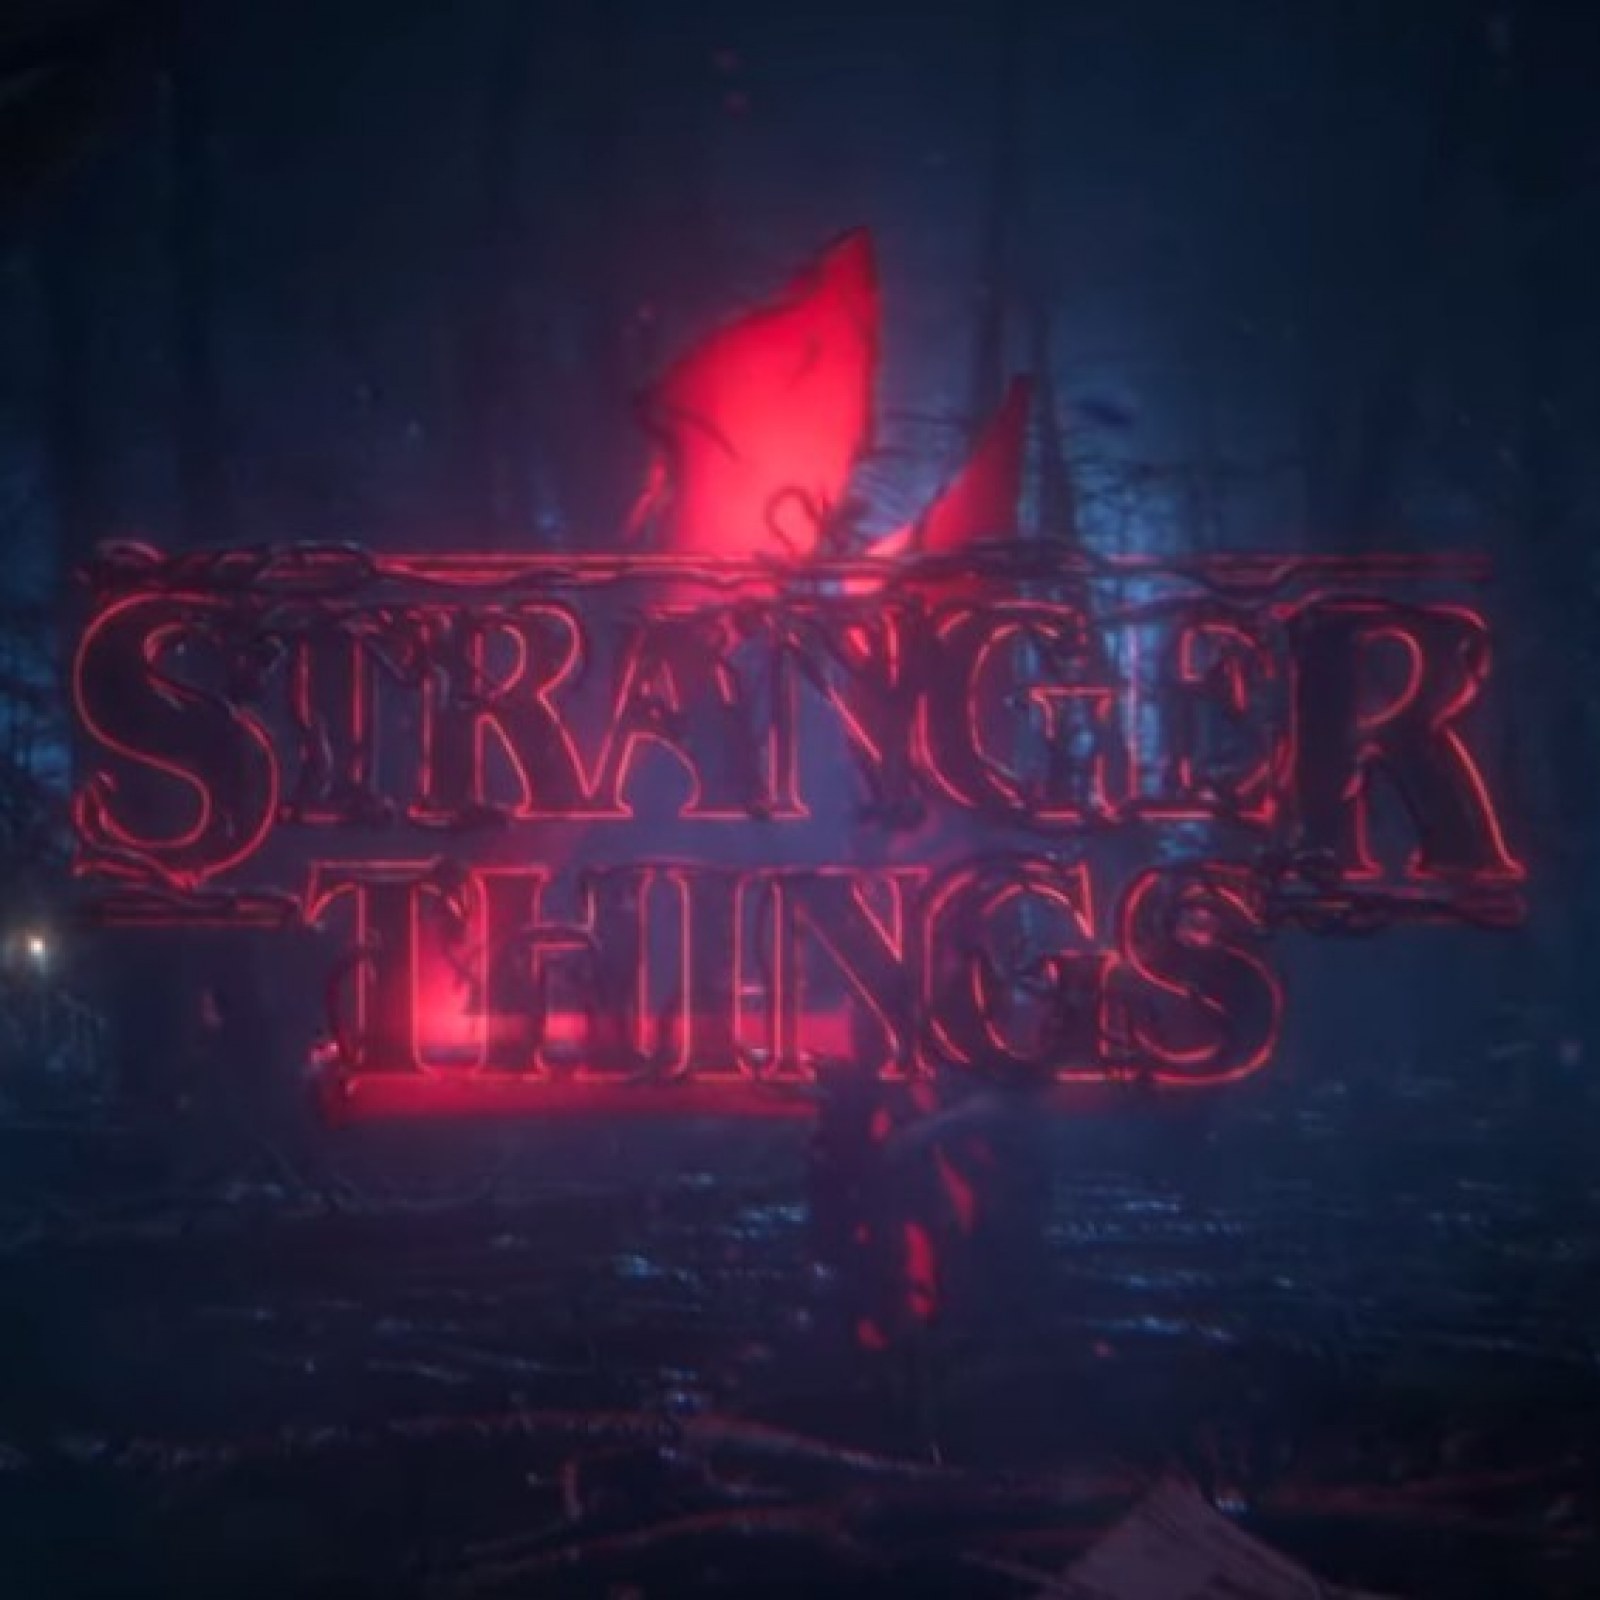 Stranger Things' Season 4 Release Date, News, Plot, Cast - 'Stranger Things'  Season 4 Trailer